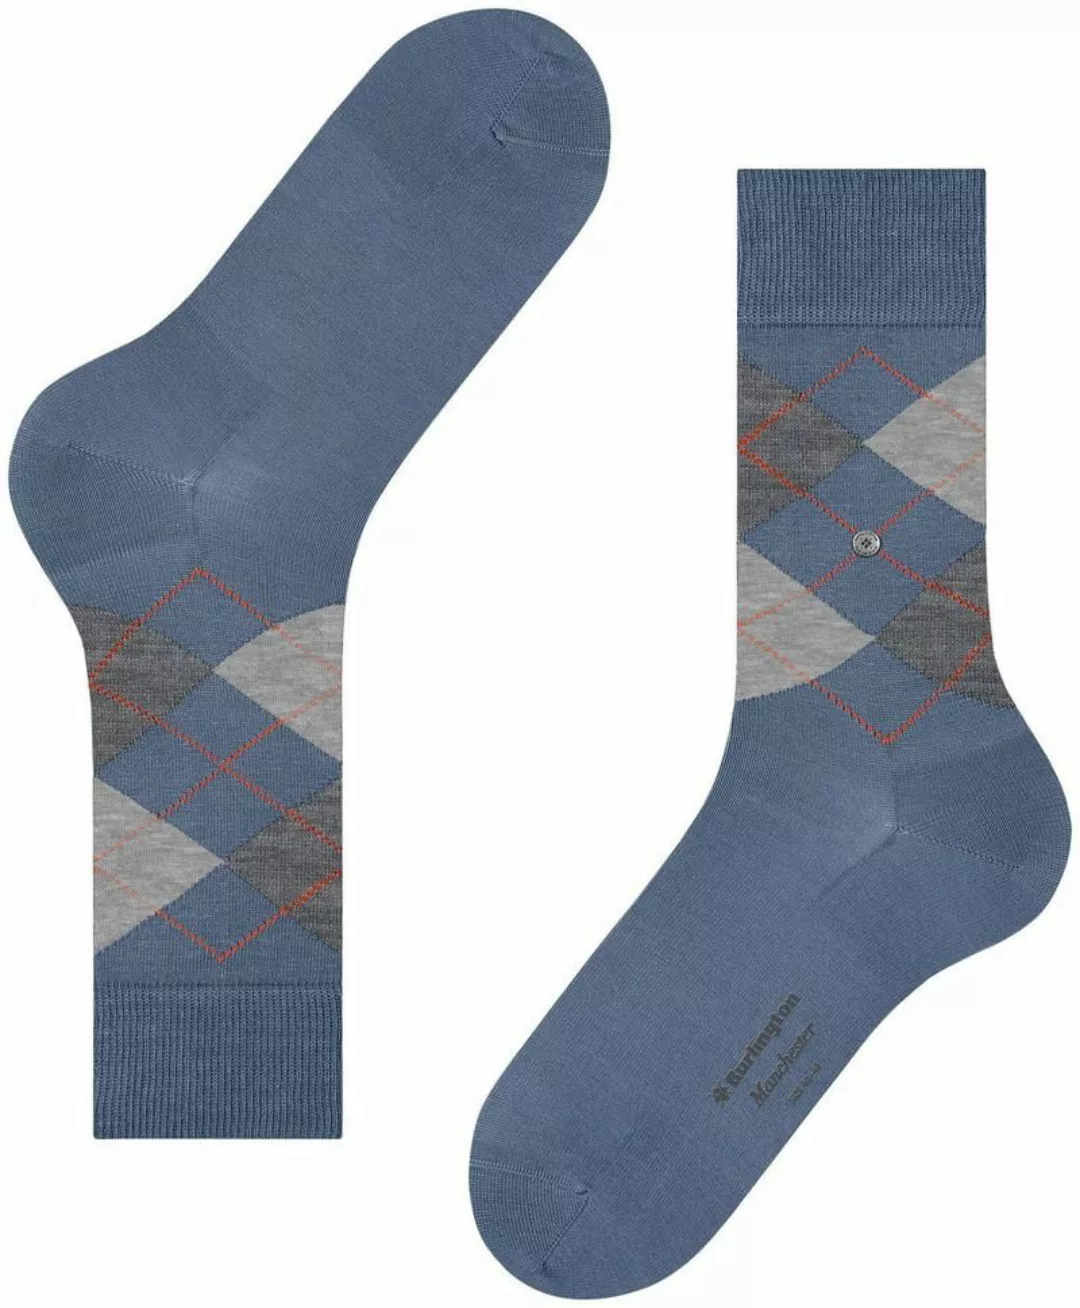 Burlington Manchester Socken Kariert Blau 6274 - Größe 40-46 günstig online kaufen